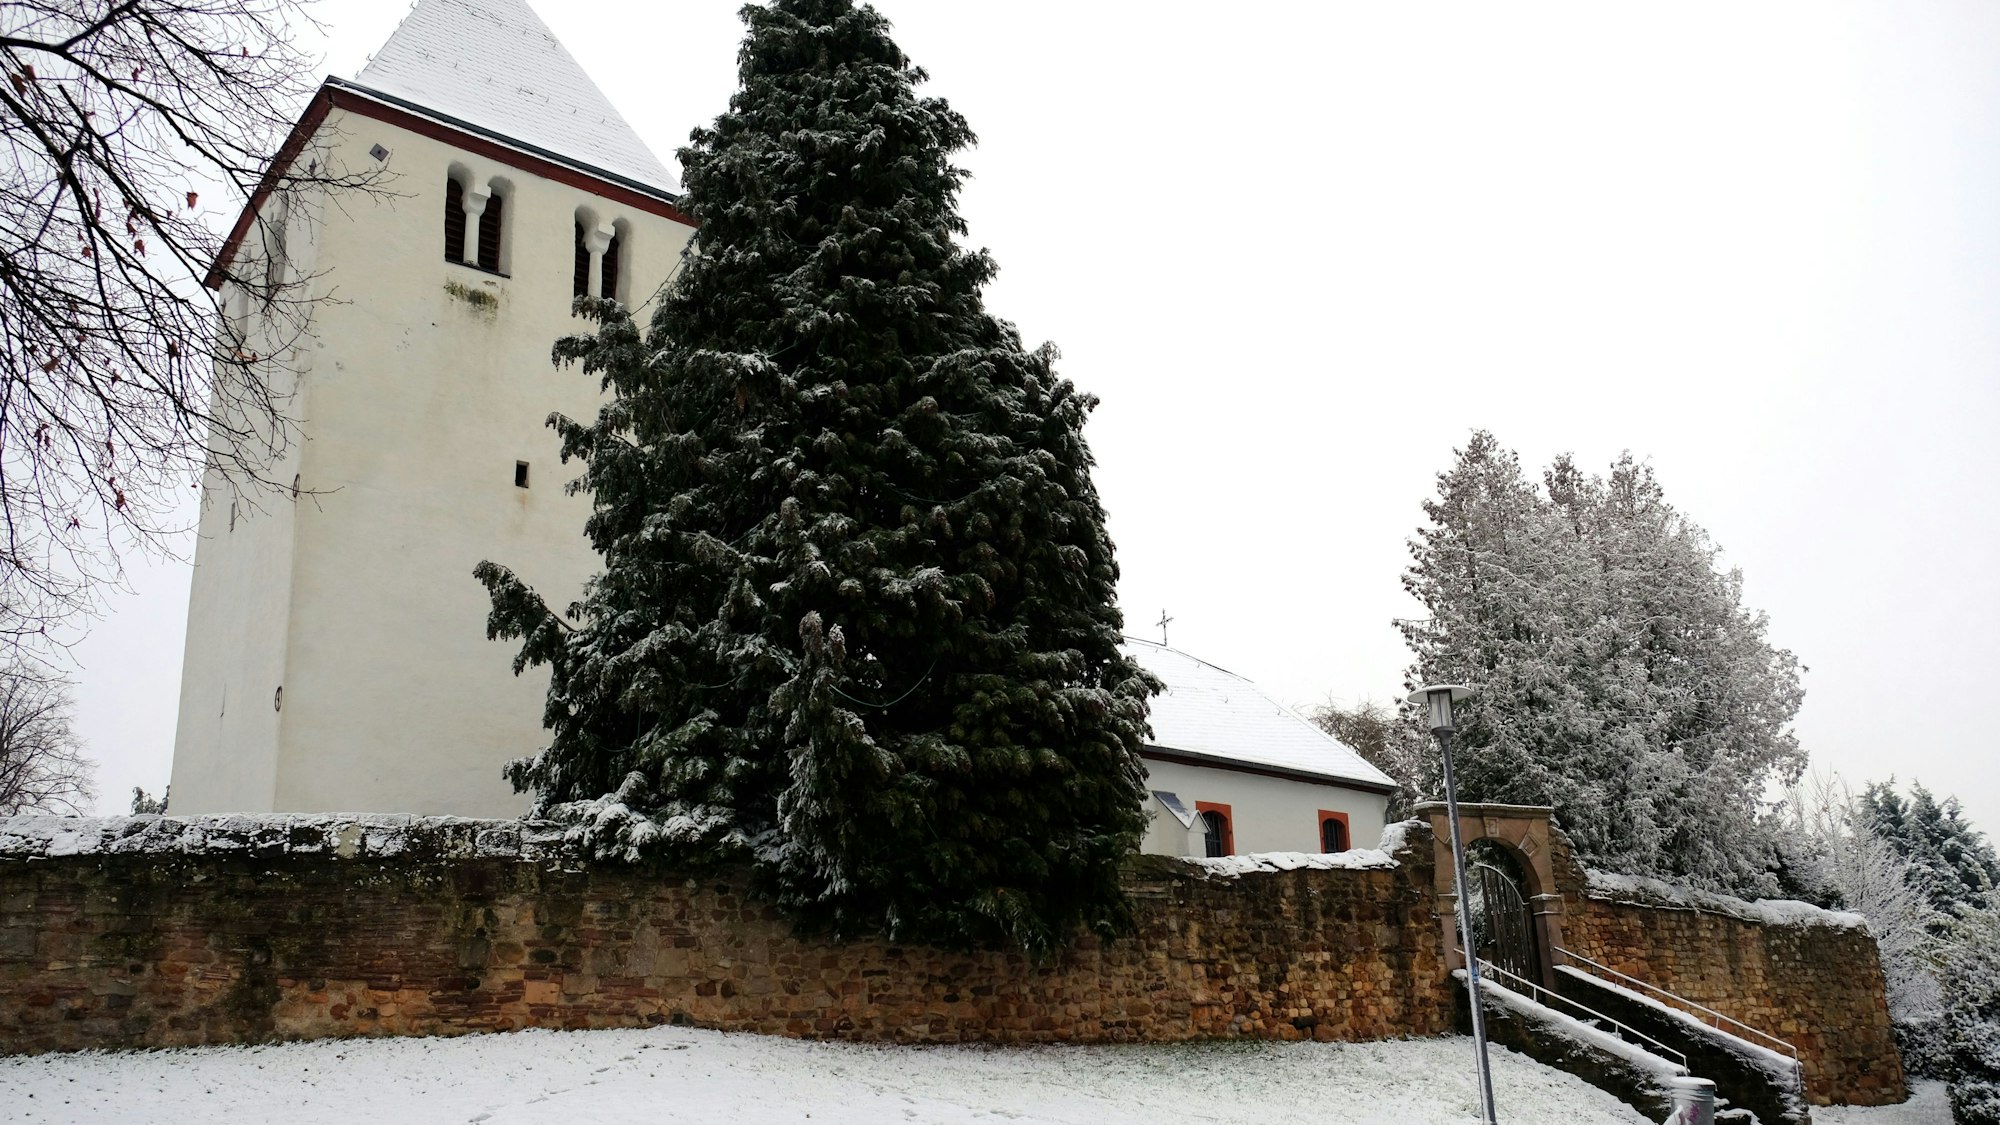 Zwischen verschneiten Bäumen und hinter einer alten Mauer ist die Alte Kirche Mechernich zu sehen.